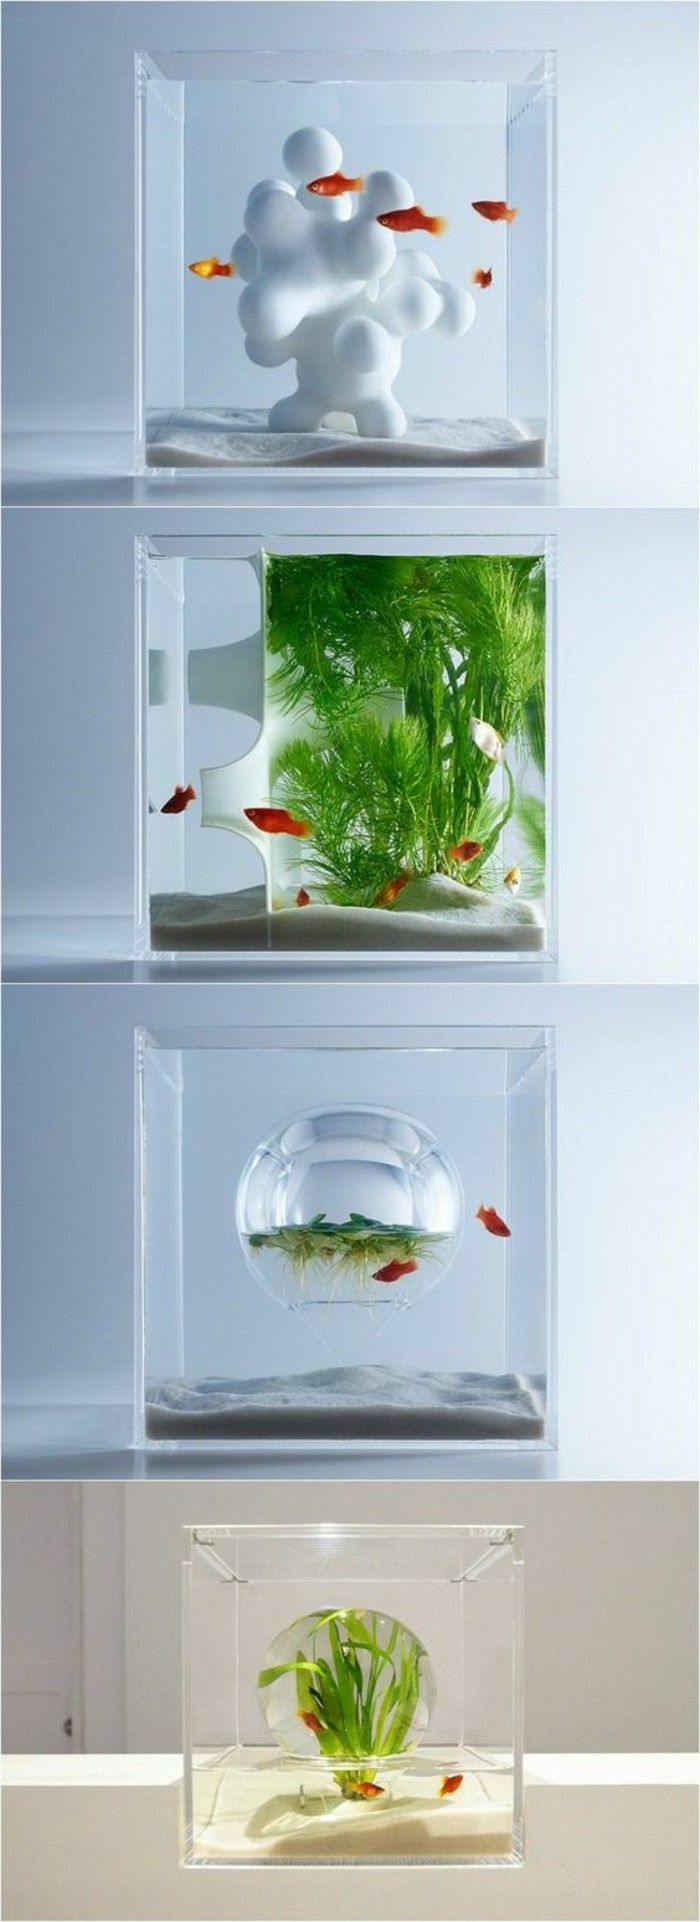 acuario-deco-acuario-para-goldfish-set-arena-agua-planta-small-acuario-acuario-dispositivo